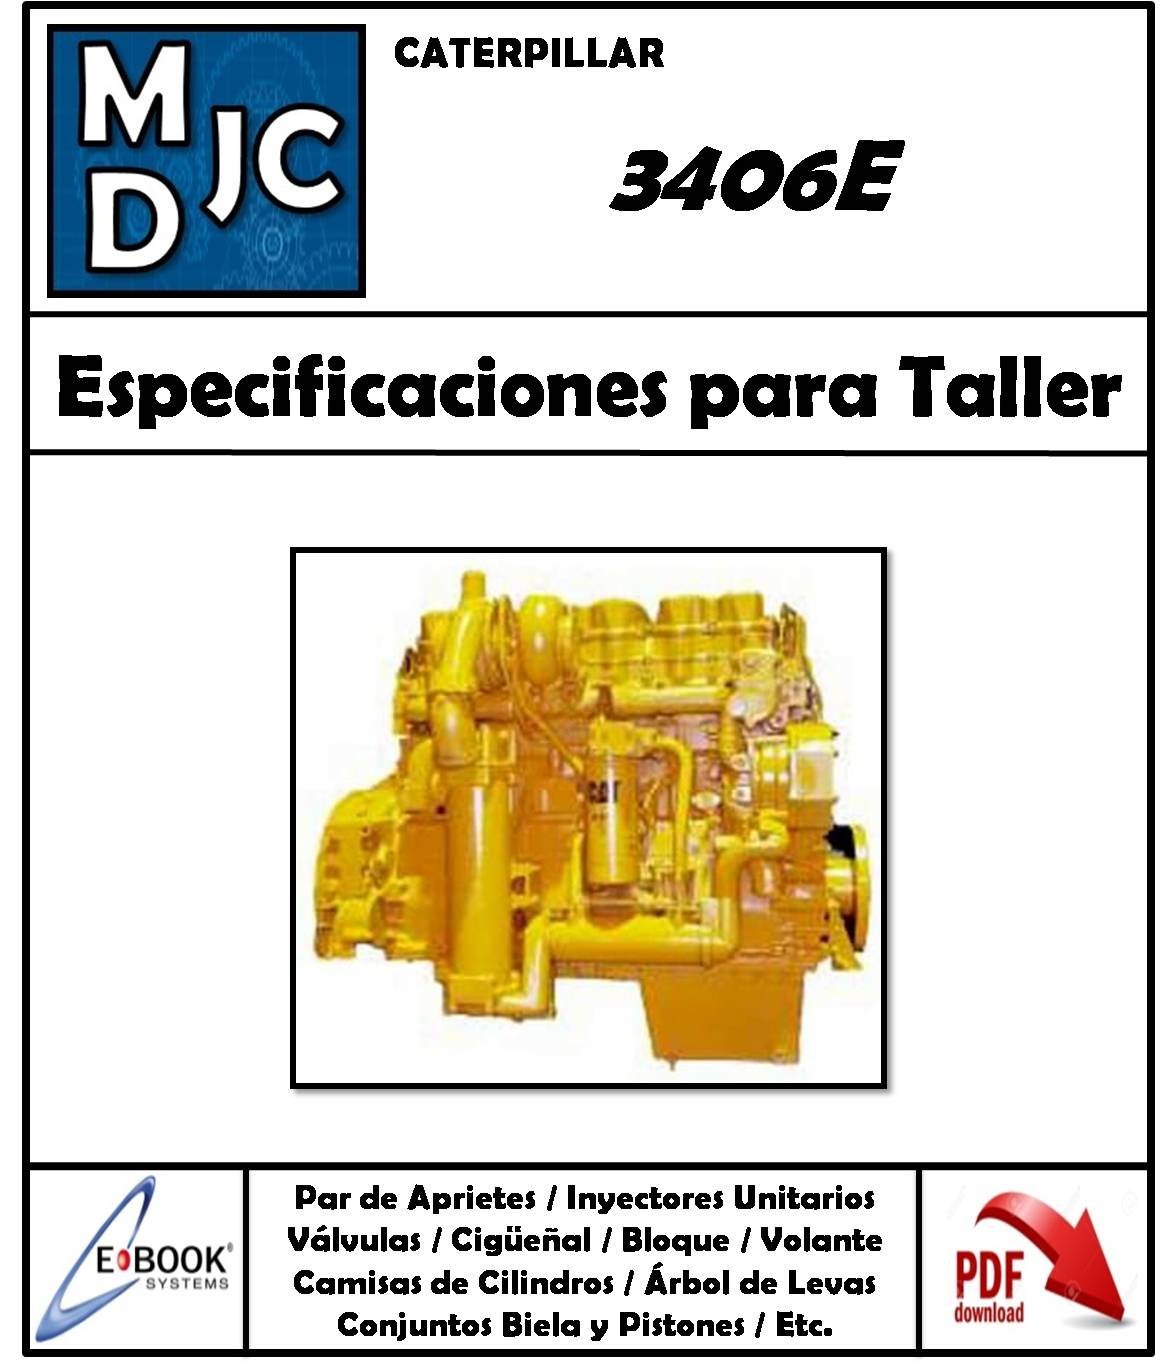 Manual De Especificaciones Técnicas Para Taller Motor Caterpillar 3406E |  MDJC - MANUALES DE TALLER